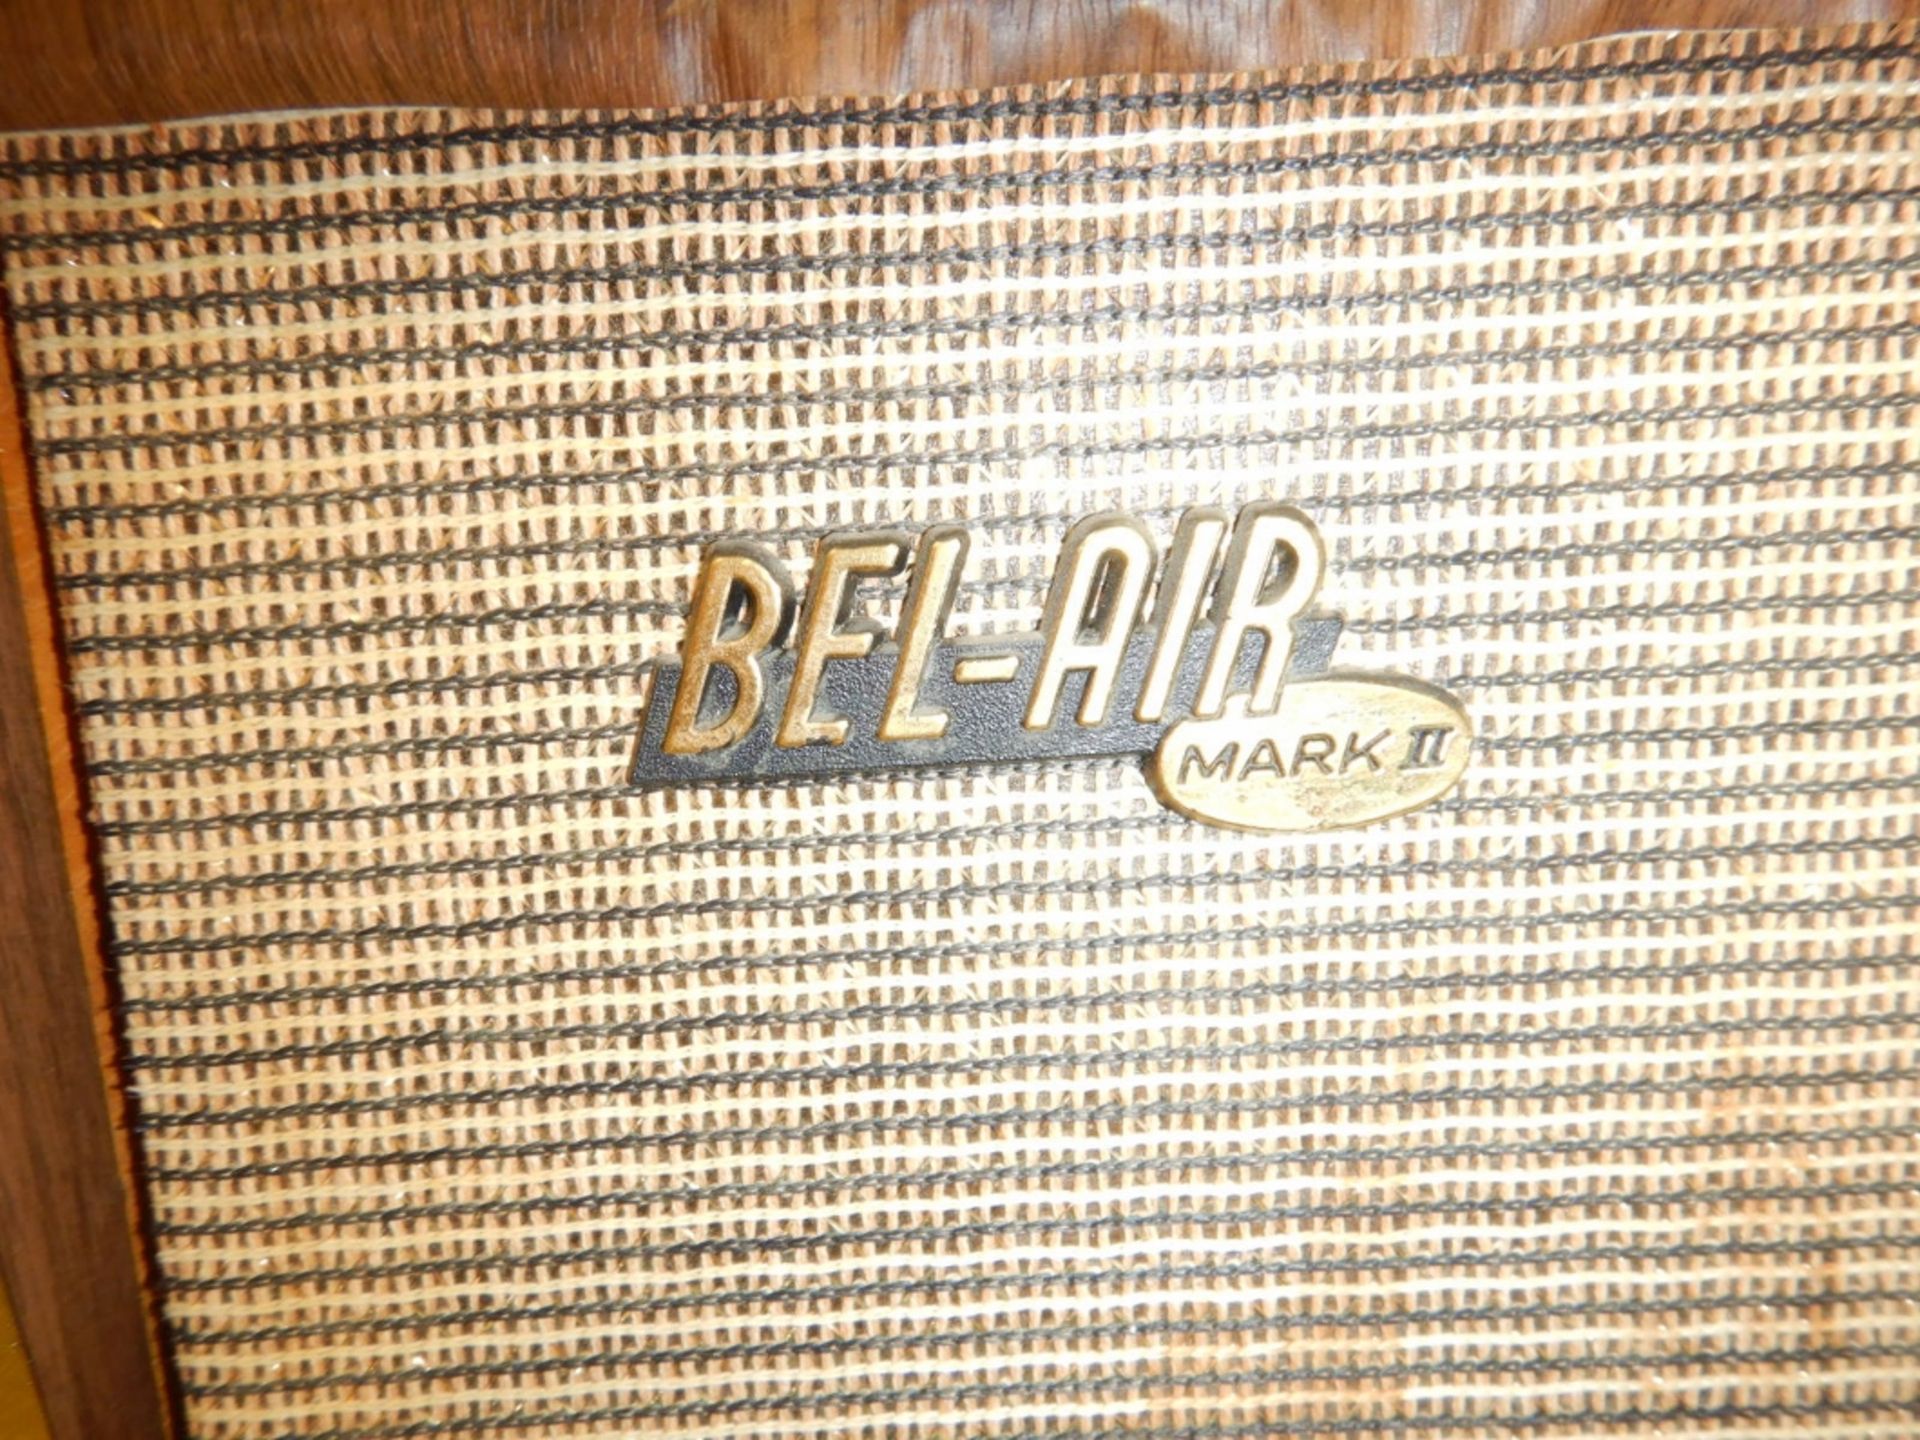 BEL-AIR MARC 2 HIO-FI RADIO PHONE MODEL PR 581, SERIAL # 2378 - Image 3 of 5